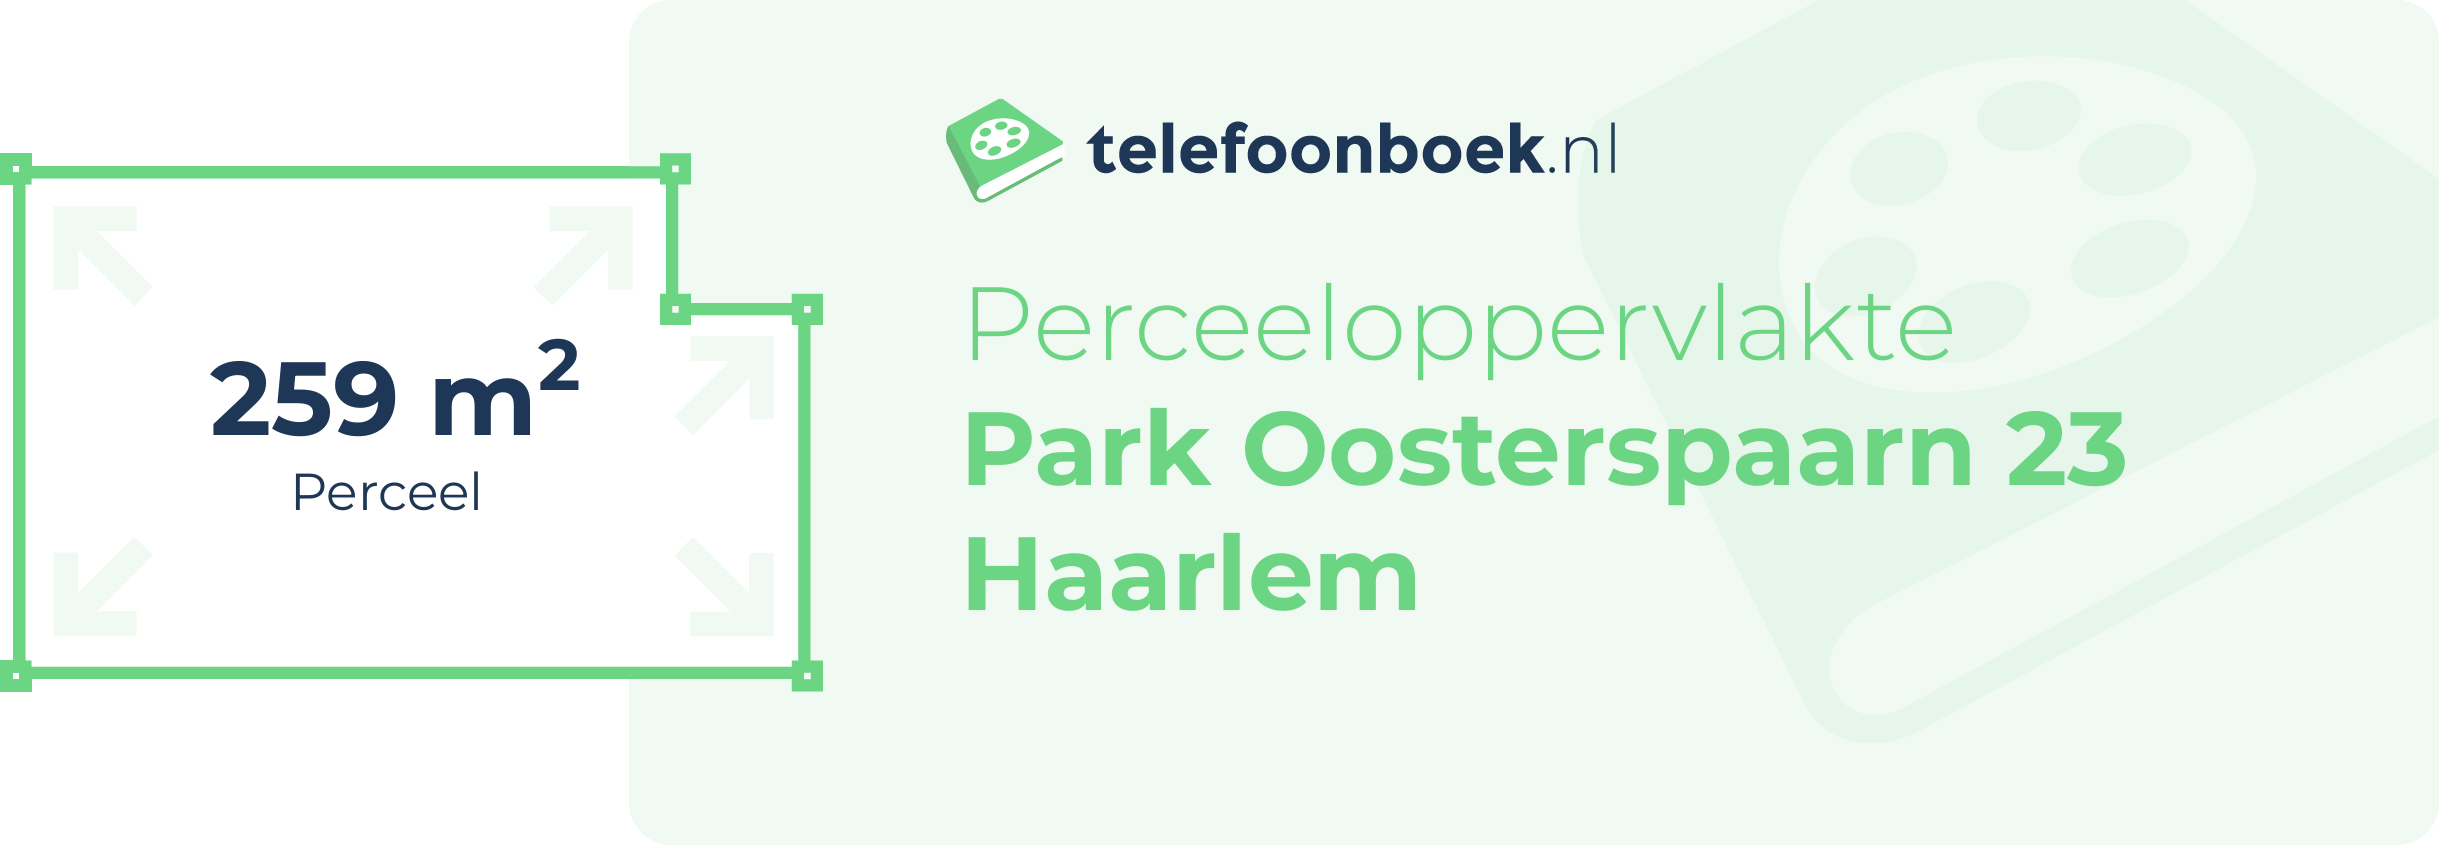 Perceeloppervlakte Park Oosterspaarn 23 Haarlem